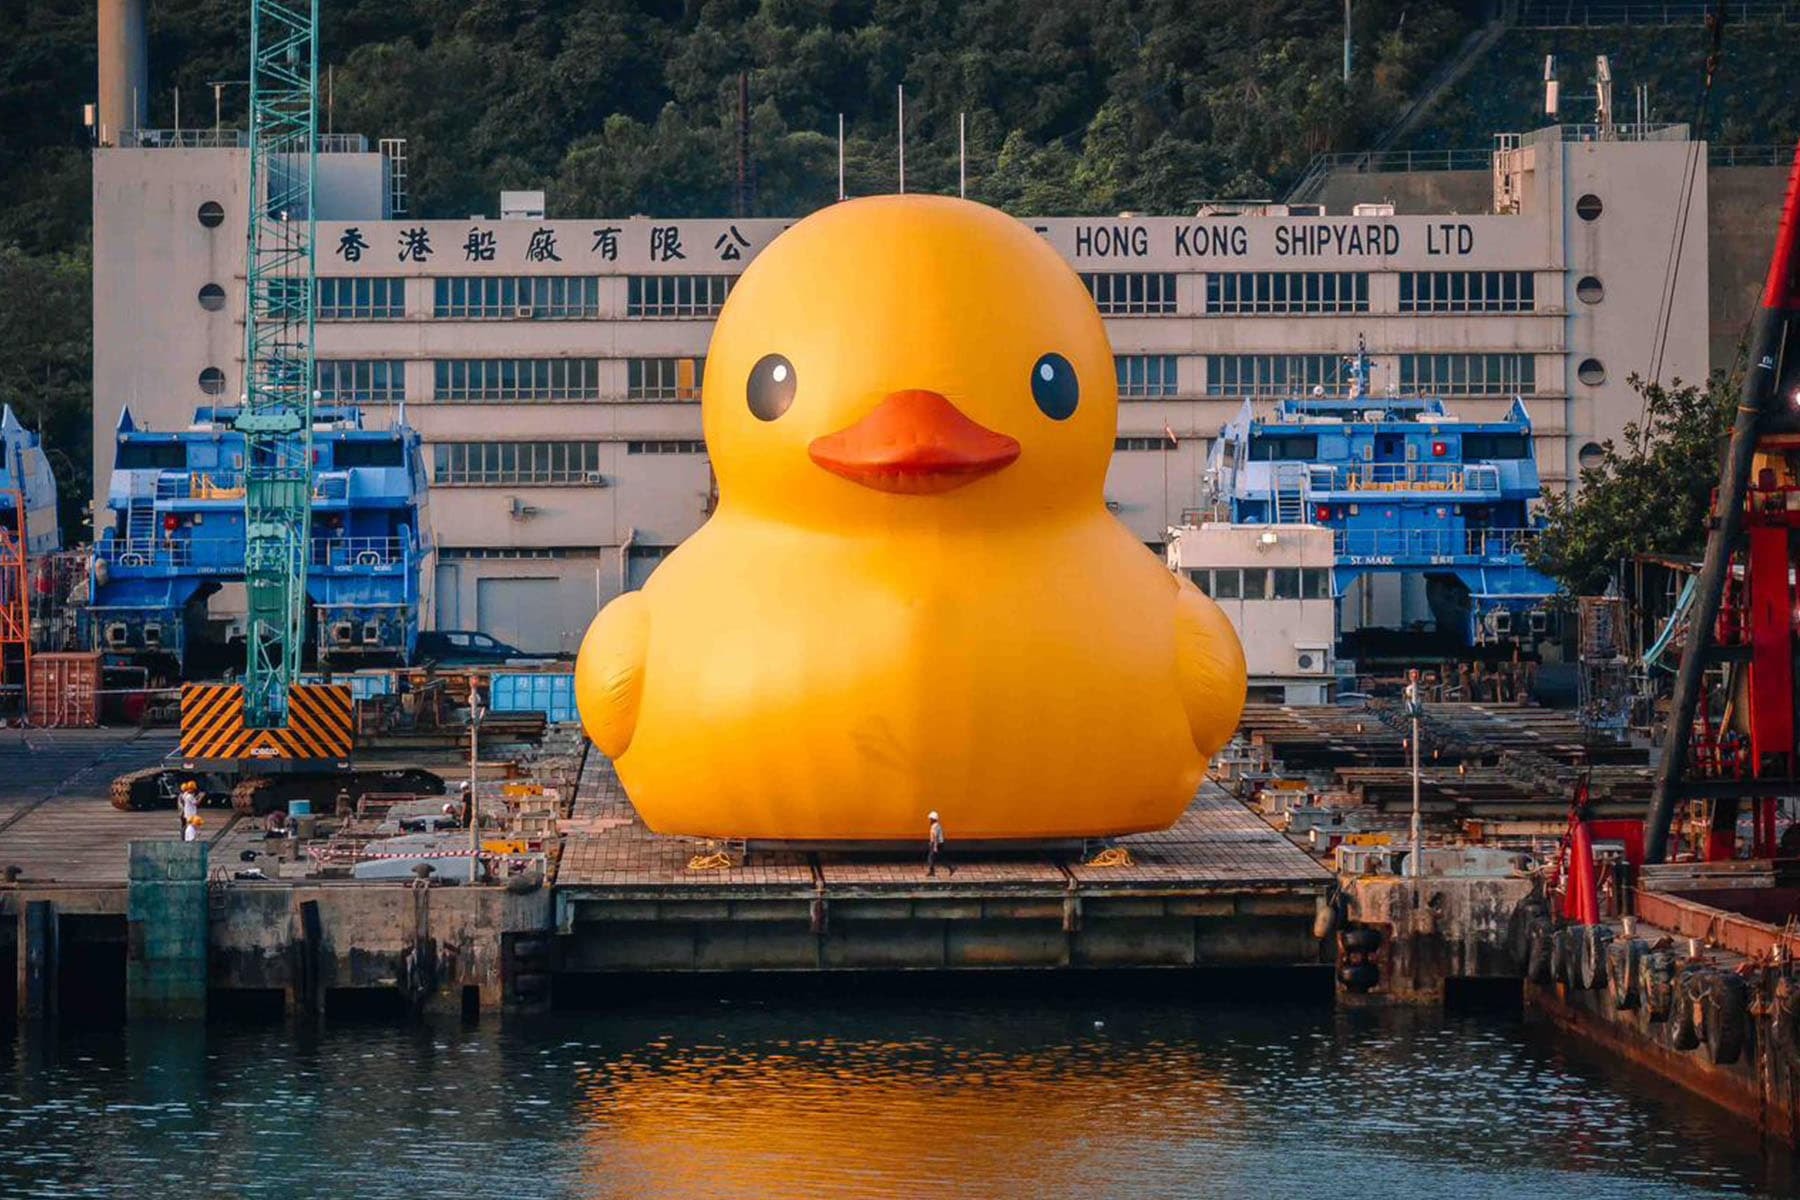 荷兰艺术家 Florentijn Hofman 创作「巨型黄色小鸭」现身香港青衣海域